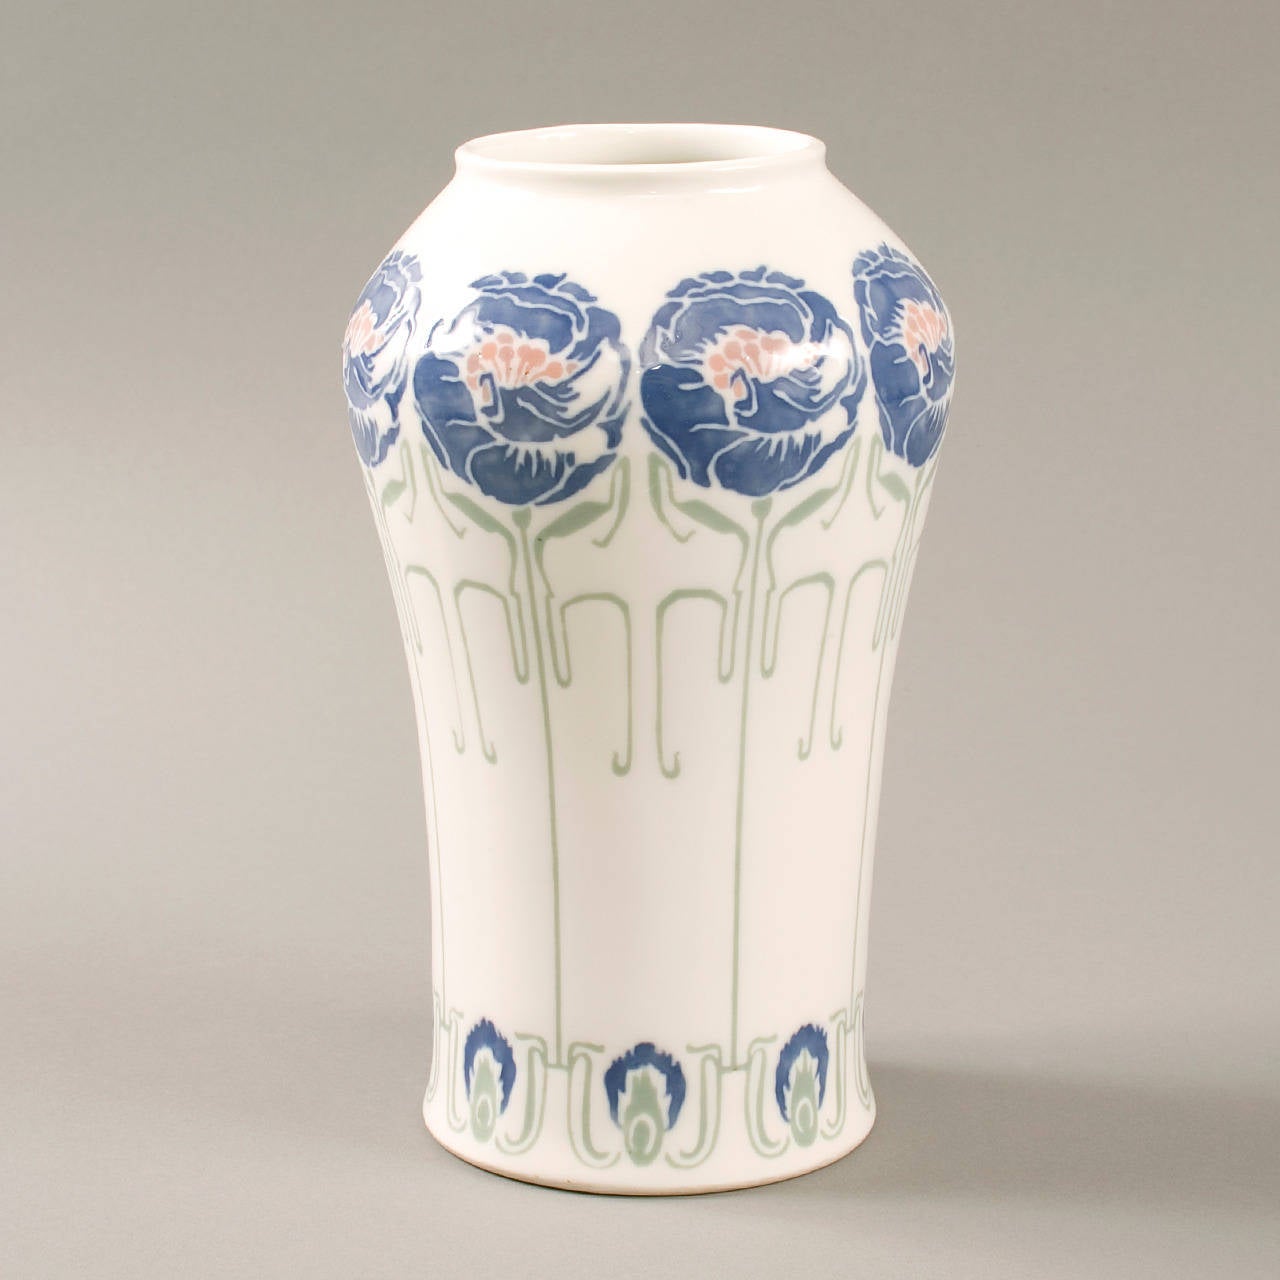 Eine französische Jugendstil-Keramikvase, die von George de Feure, Gérard, Dufraisseix und Abbott für Bing hergestellt wurde. Die Porzellanvase ist mit einem Blumendekor in Biskuit, blauer Emaille, Rosa und Grün sowie einer weißen Zone versehen.